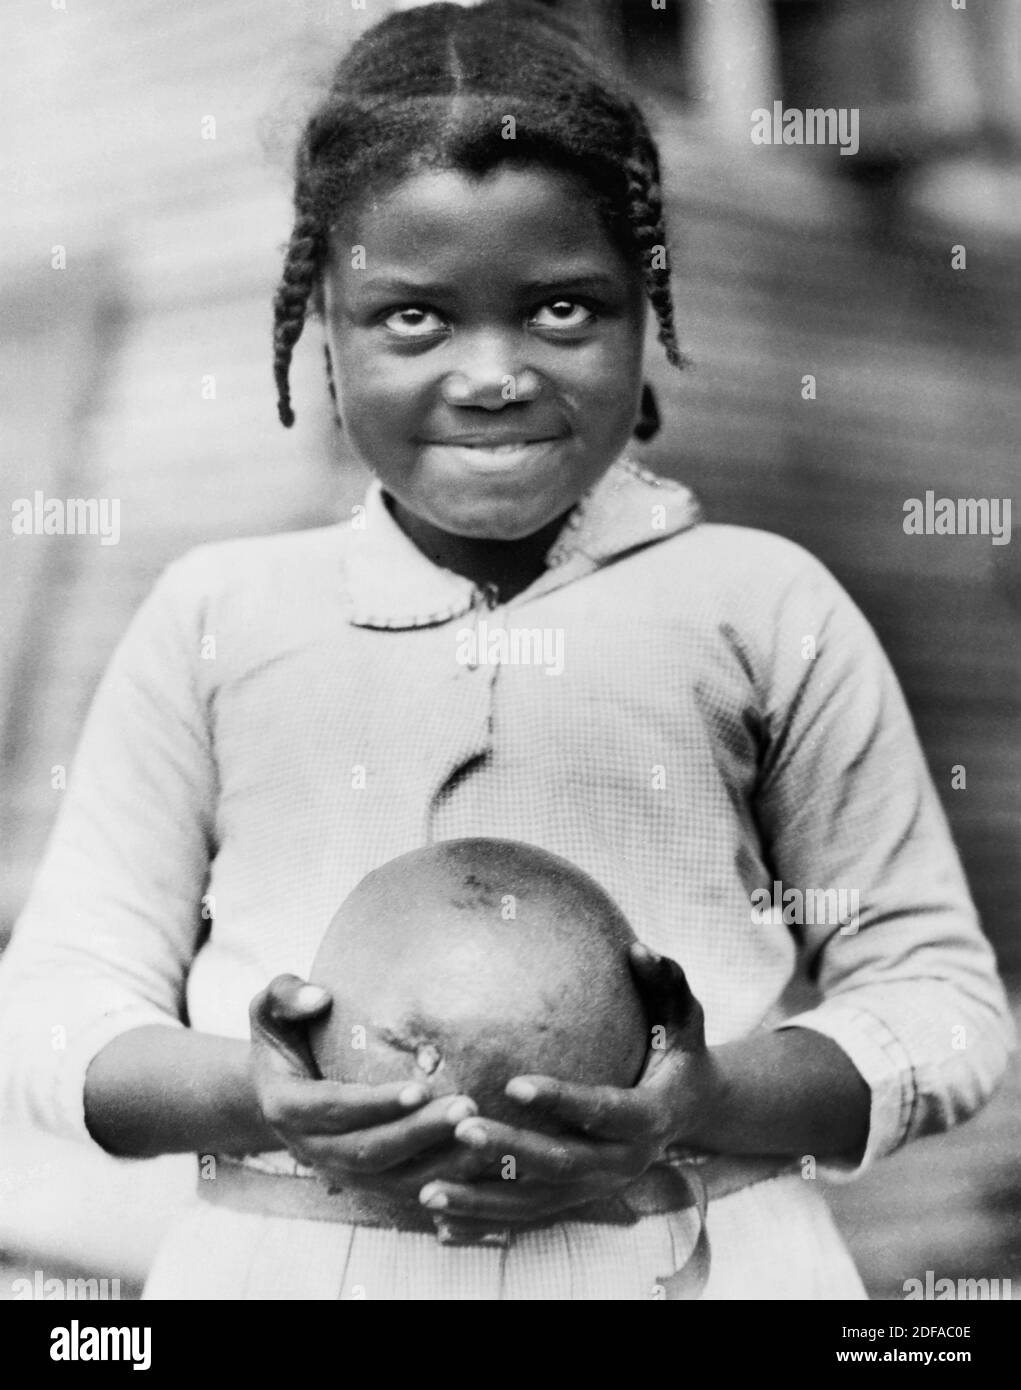 Giovane ragazza con pompelmo fornito dalla Croce Rossa americana alle vittime della siccità, Mound Bayou, Mississippi, USA, Lewis Wickes Hine, American National Red Cross Collection, 1930 Foto Stock